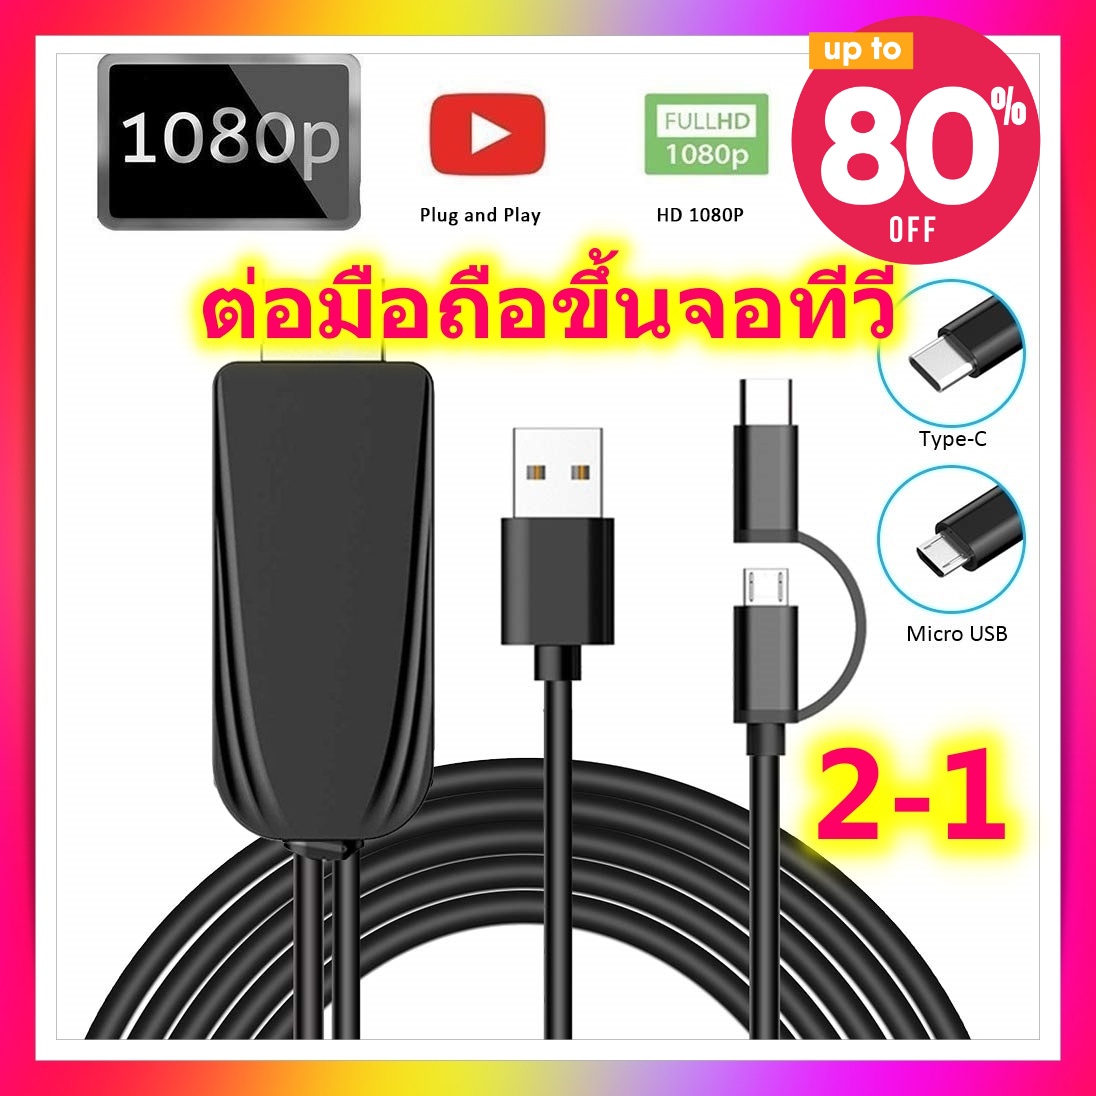 สายต่อมือถือขึ้นทีวี 2 in 1 HDMI LD25 USB Cable for iPhone Lightning Android Micro USB Type C to HDMI HDTV Digital AV Adapter for iPhone X 8 Huawei Xiaomi